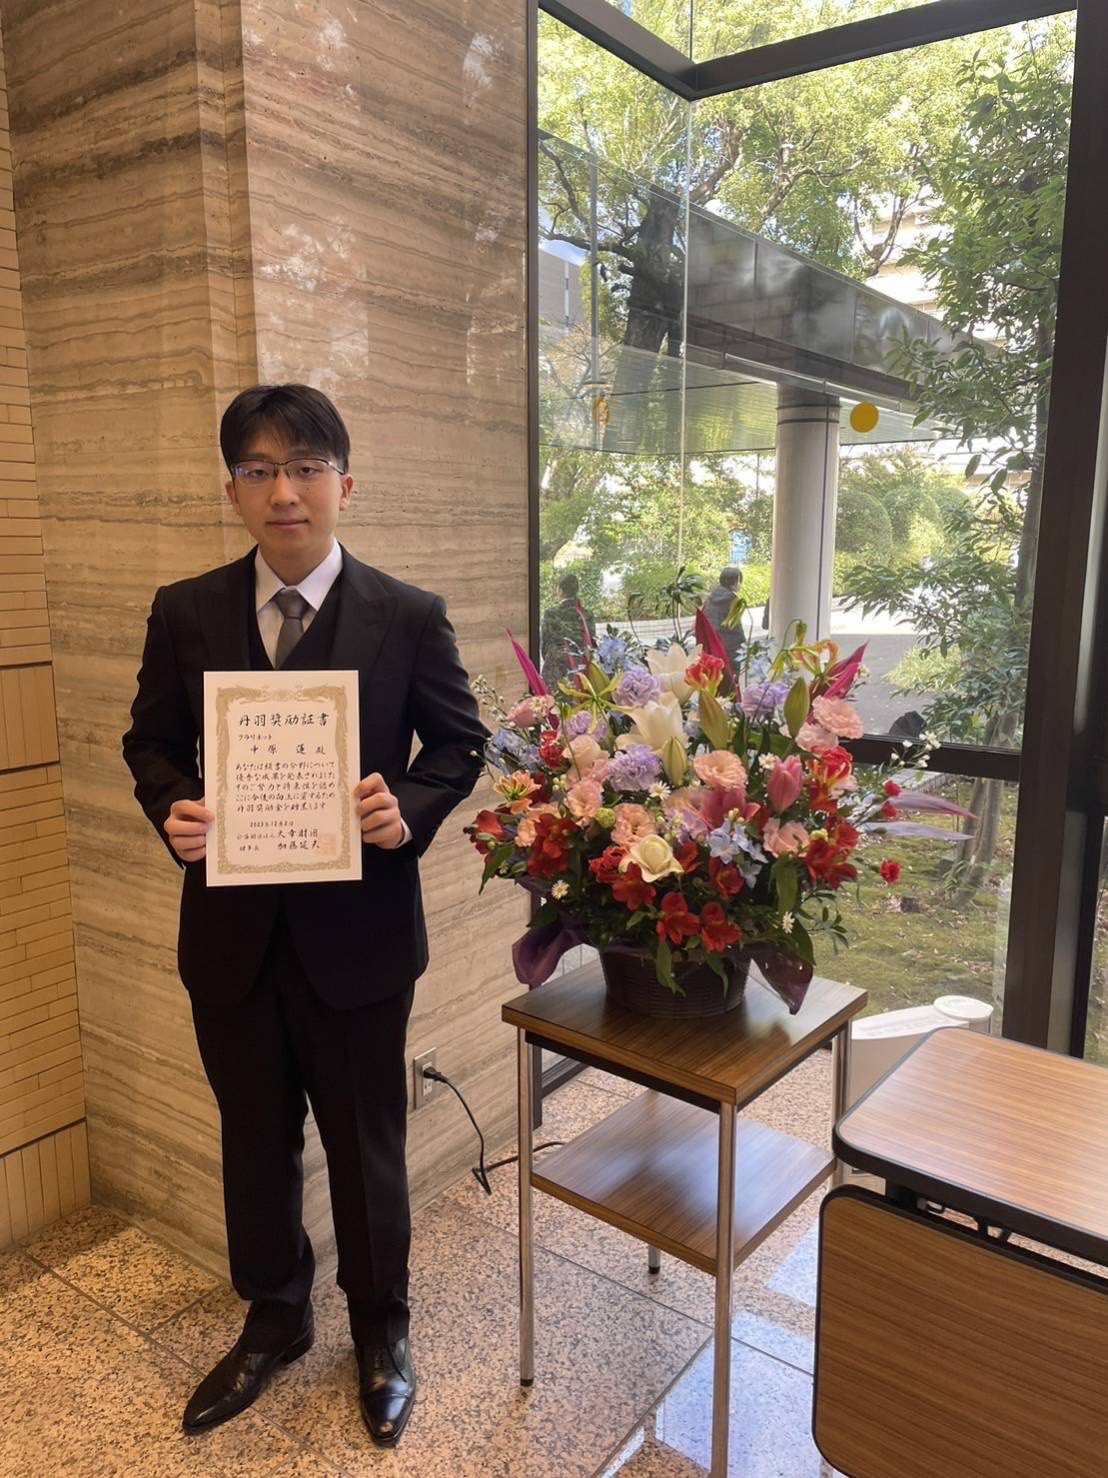 公益財団法人大幸財団の丹羽奨励生を理学療法学科の学生が受賞しました。